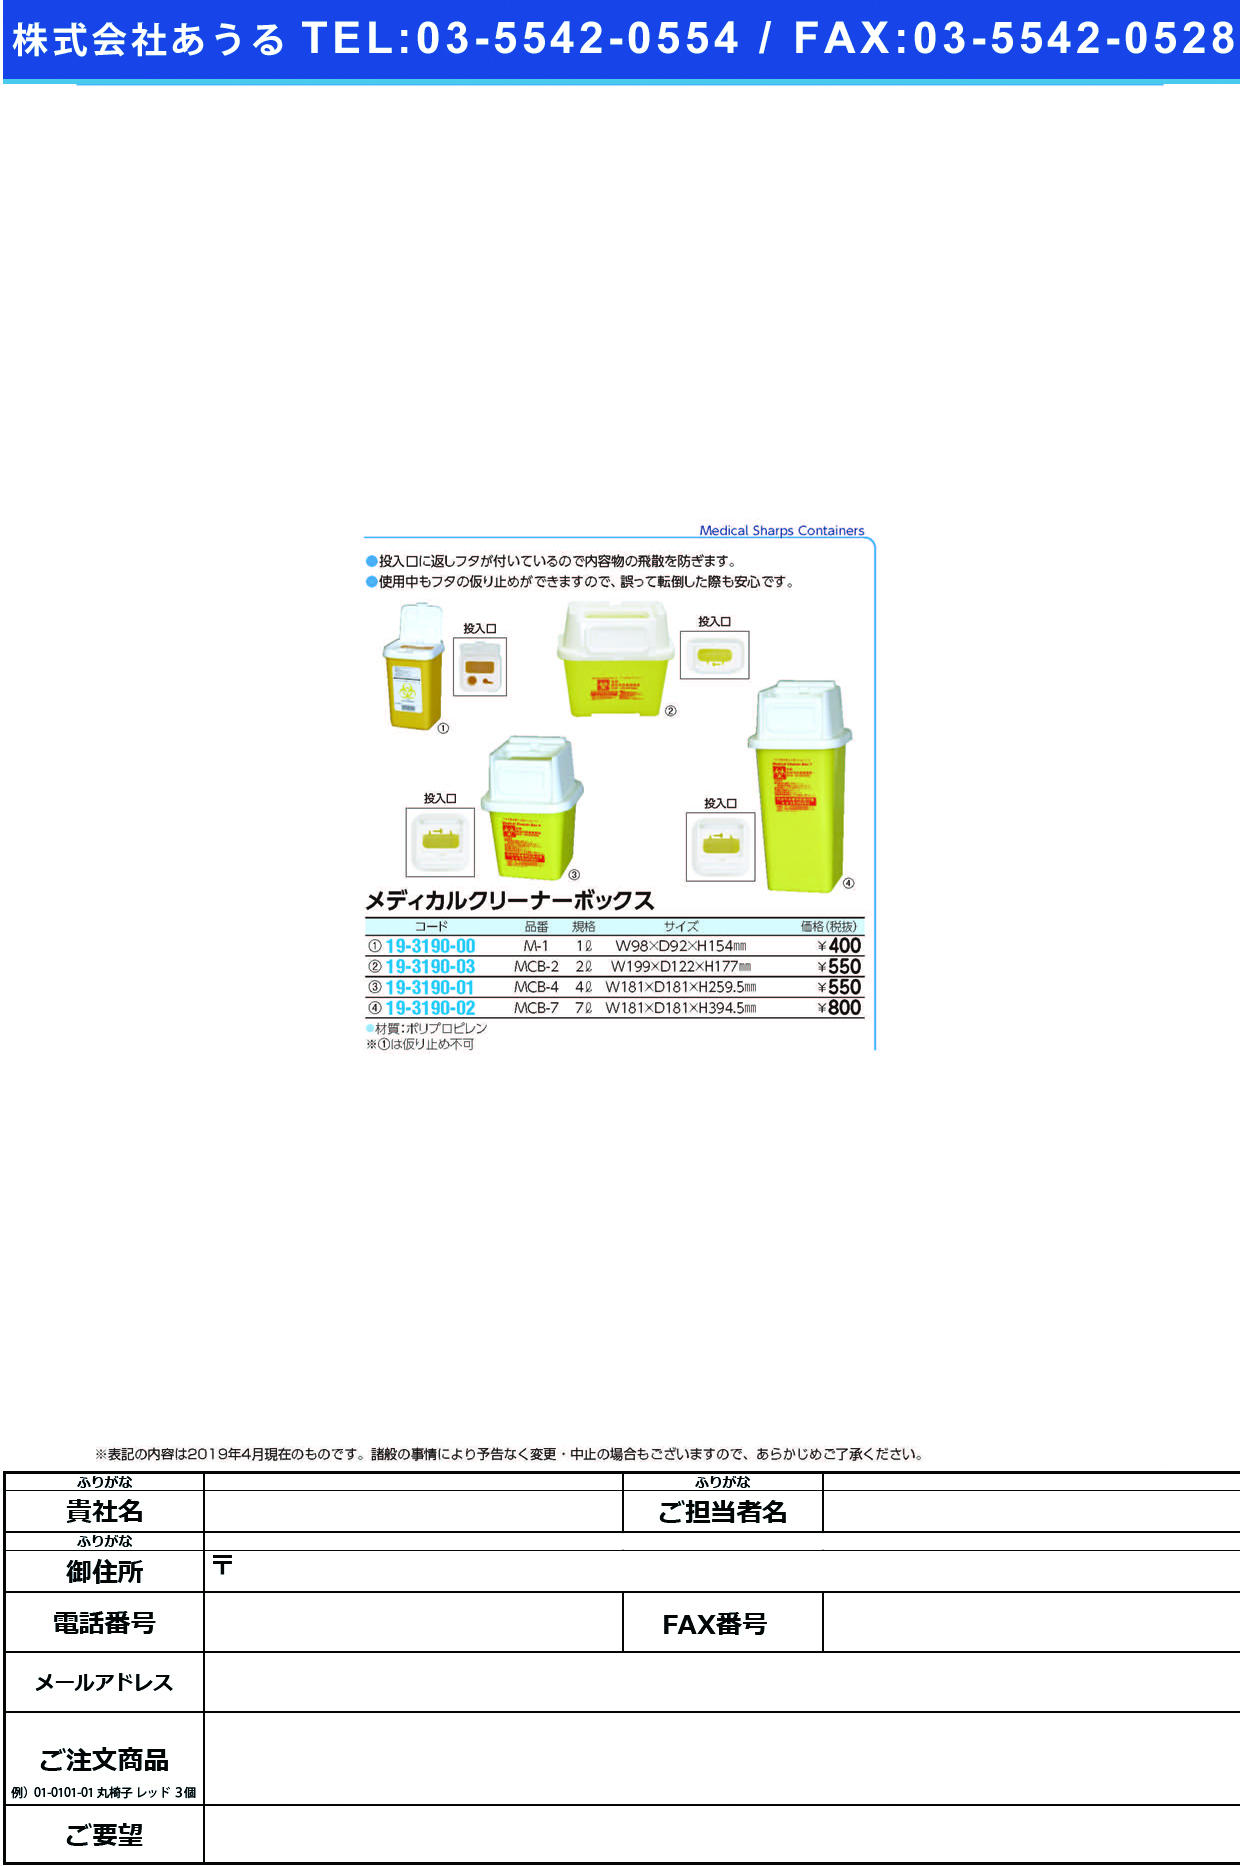 (19-3190-03)メディカルクリーナーボックス MCB-2(2L)7-109 ﾒﾃﾞｨｶﾙｸﾘｰﾅｰﾎﾞｯｸｽ【1個単位】【2019年カタログ商品】